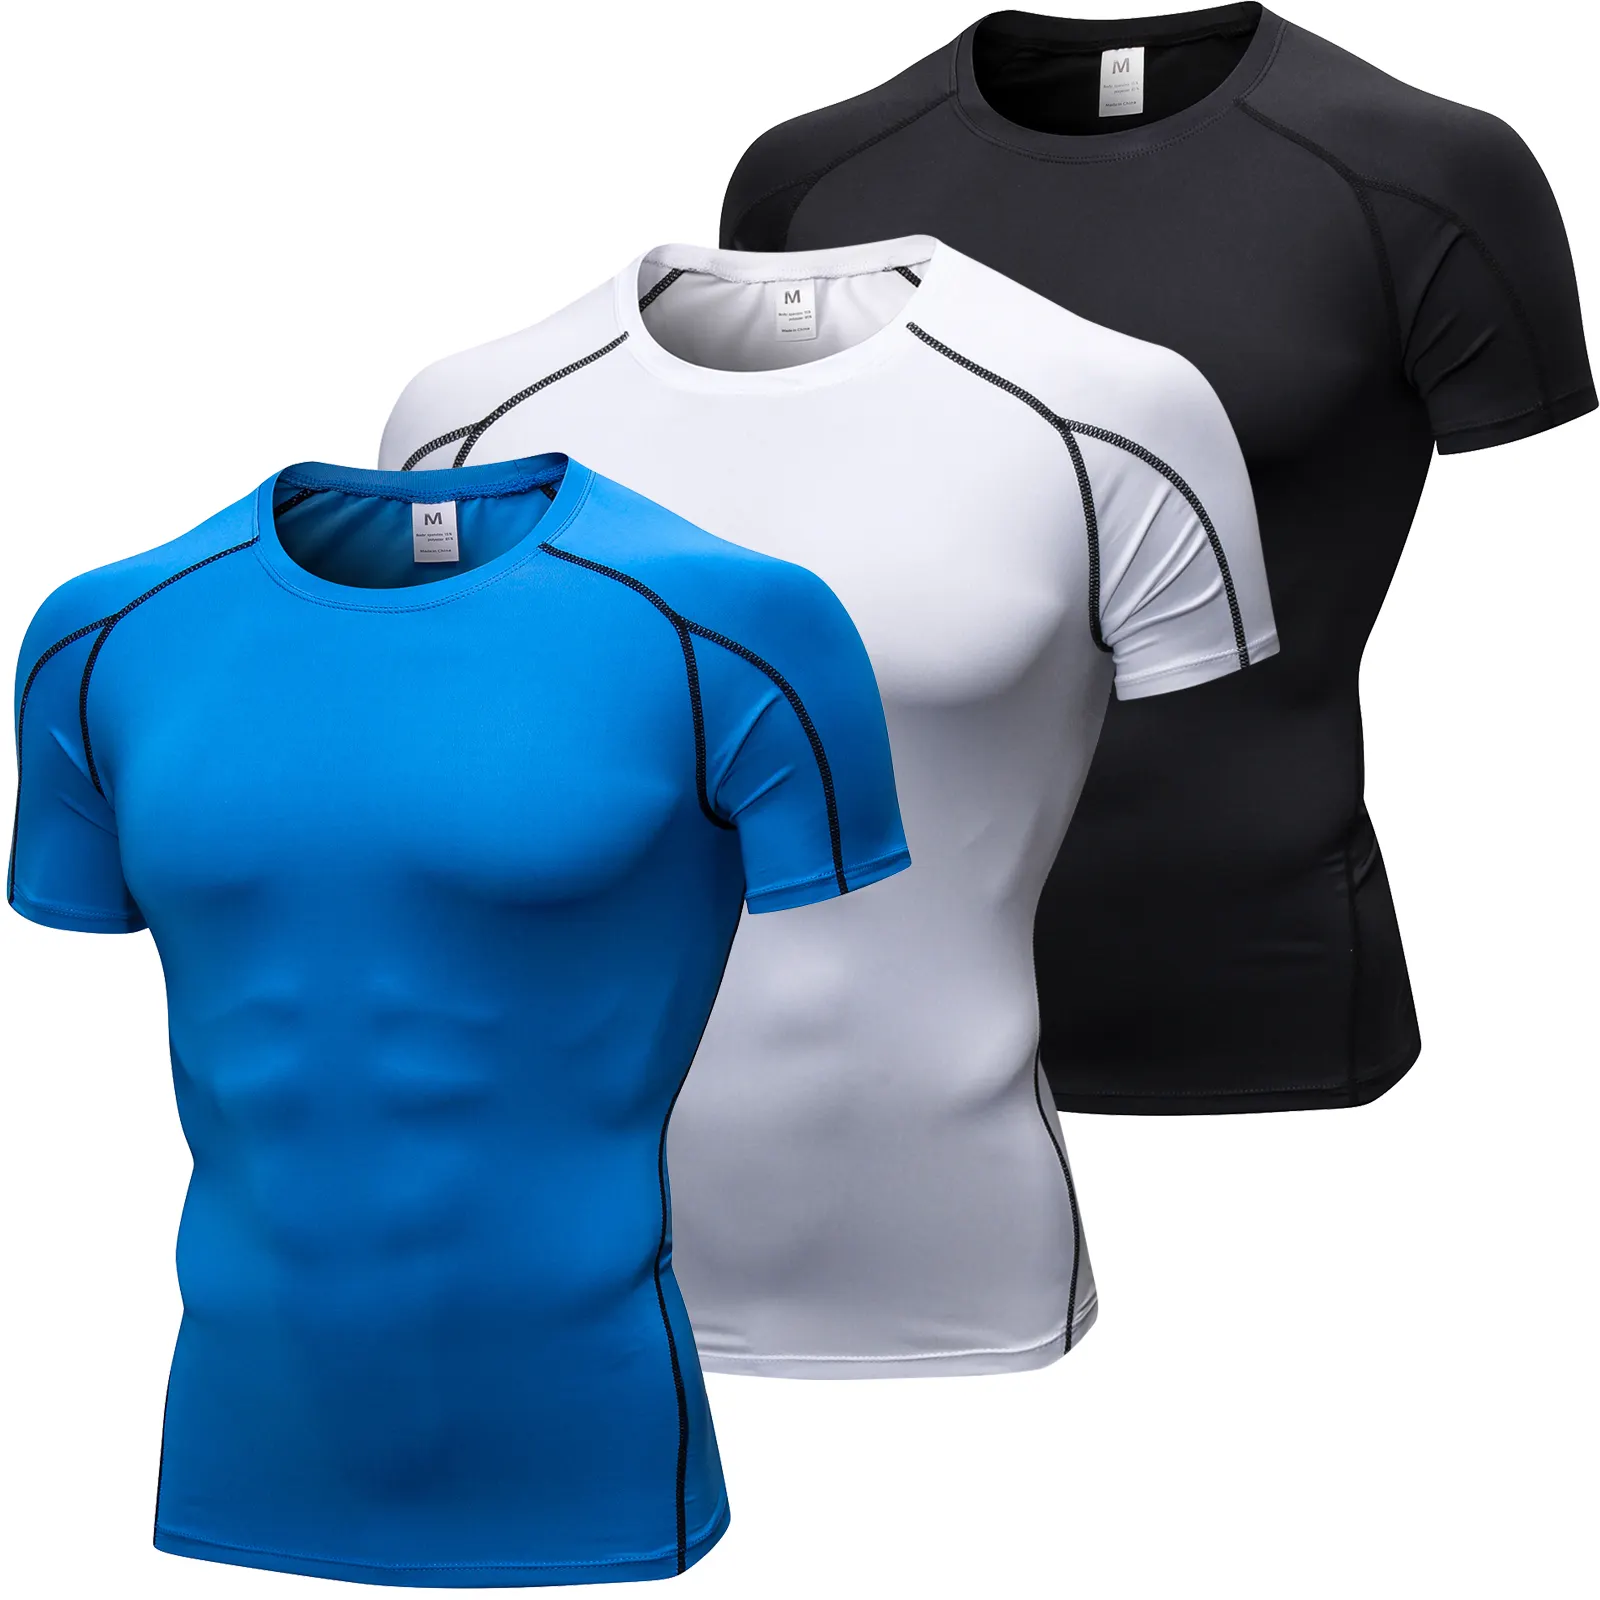 Camiseta atacada esportiva para corrida, camiseta fitness masculina para academia e esportes, corte rápido